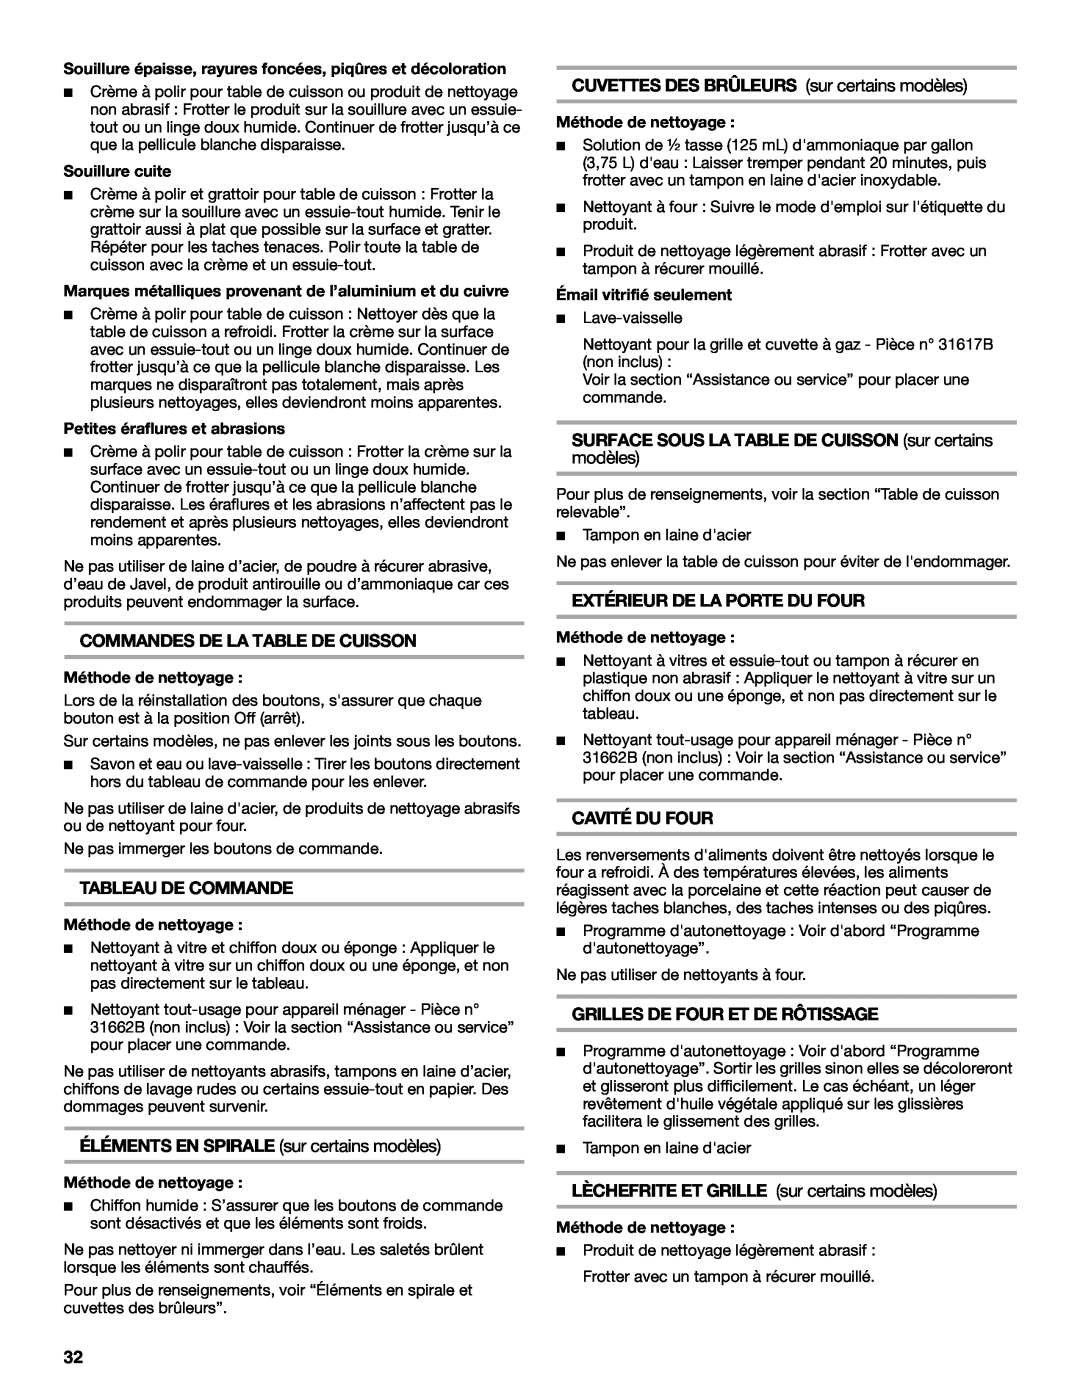 Whirlpool W10120516A manual Commandes De La Table De Cuisson, Tableau De Commande, ÉLÉMENTS EN SPIRALE sur certains modèles 